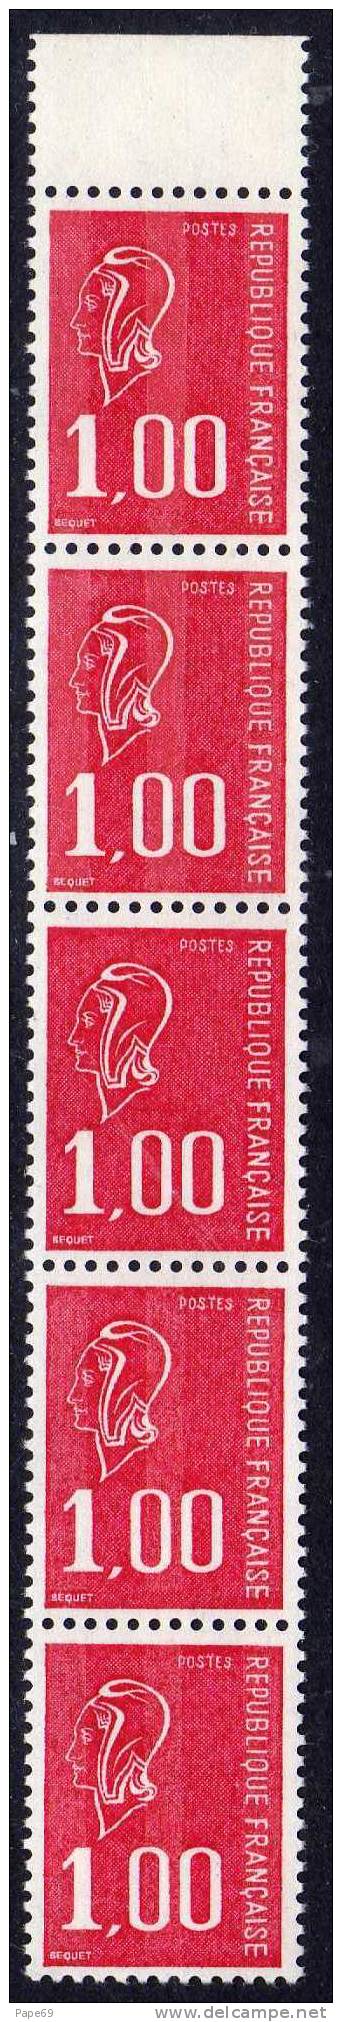 France N° 1892f  XX  Marianne De Bequet 1 F. Rouge Variété Sans Phosphore (au Milieu)  Tenant à Normal ( 2 X 2 ) TB - Unused Stamps